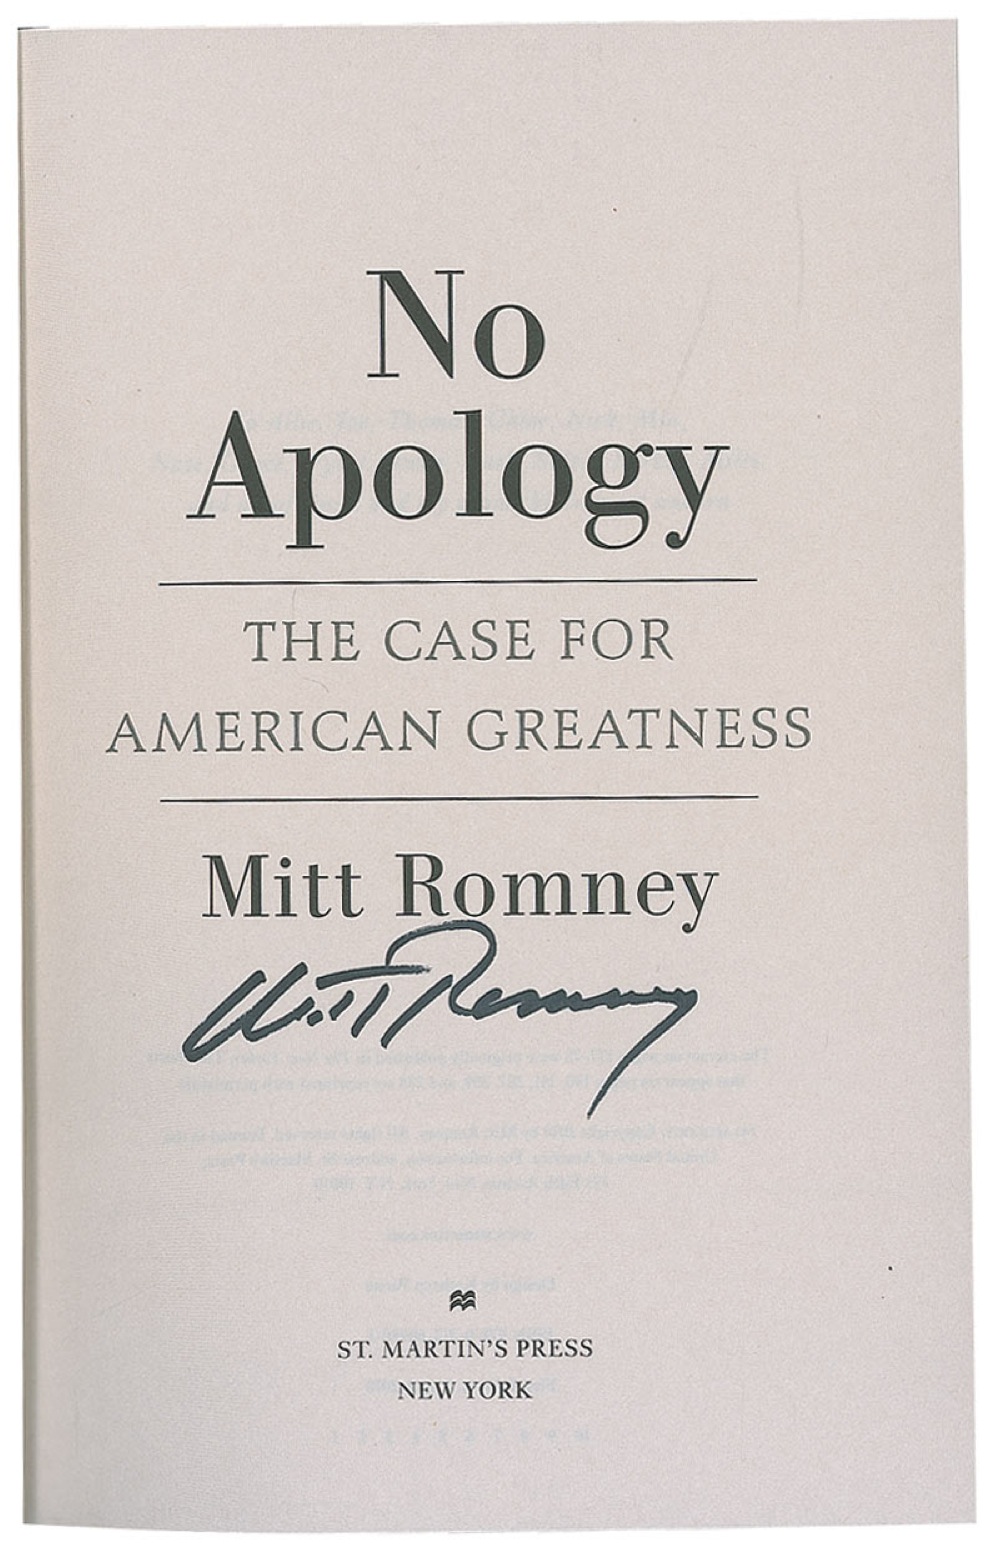 Lot #299 Mitt Romney